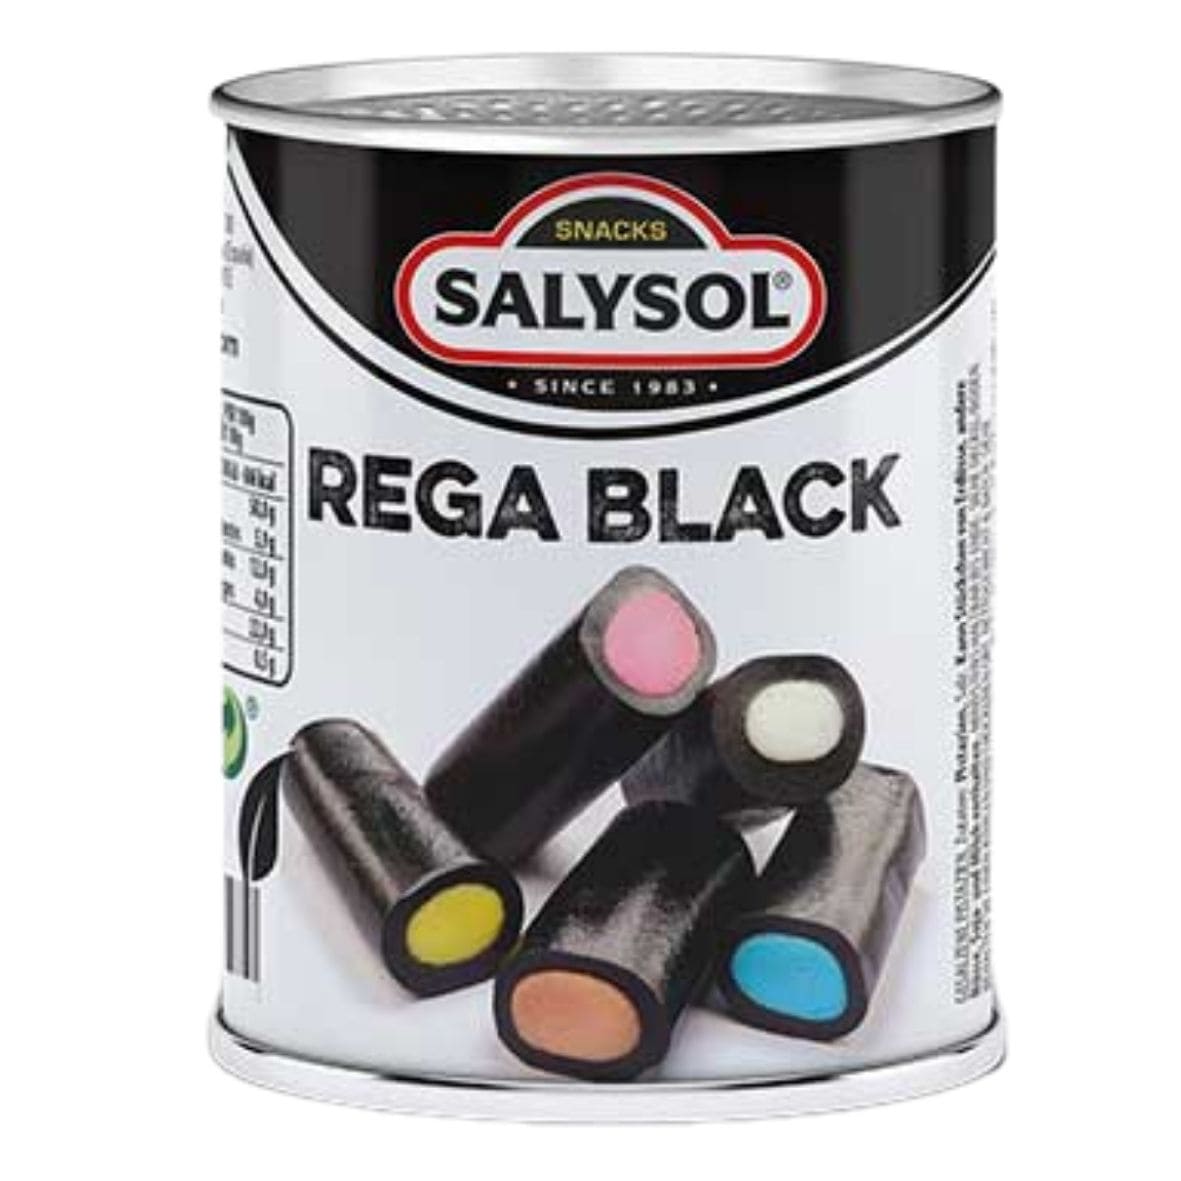 Salysol - Rega Black